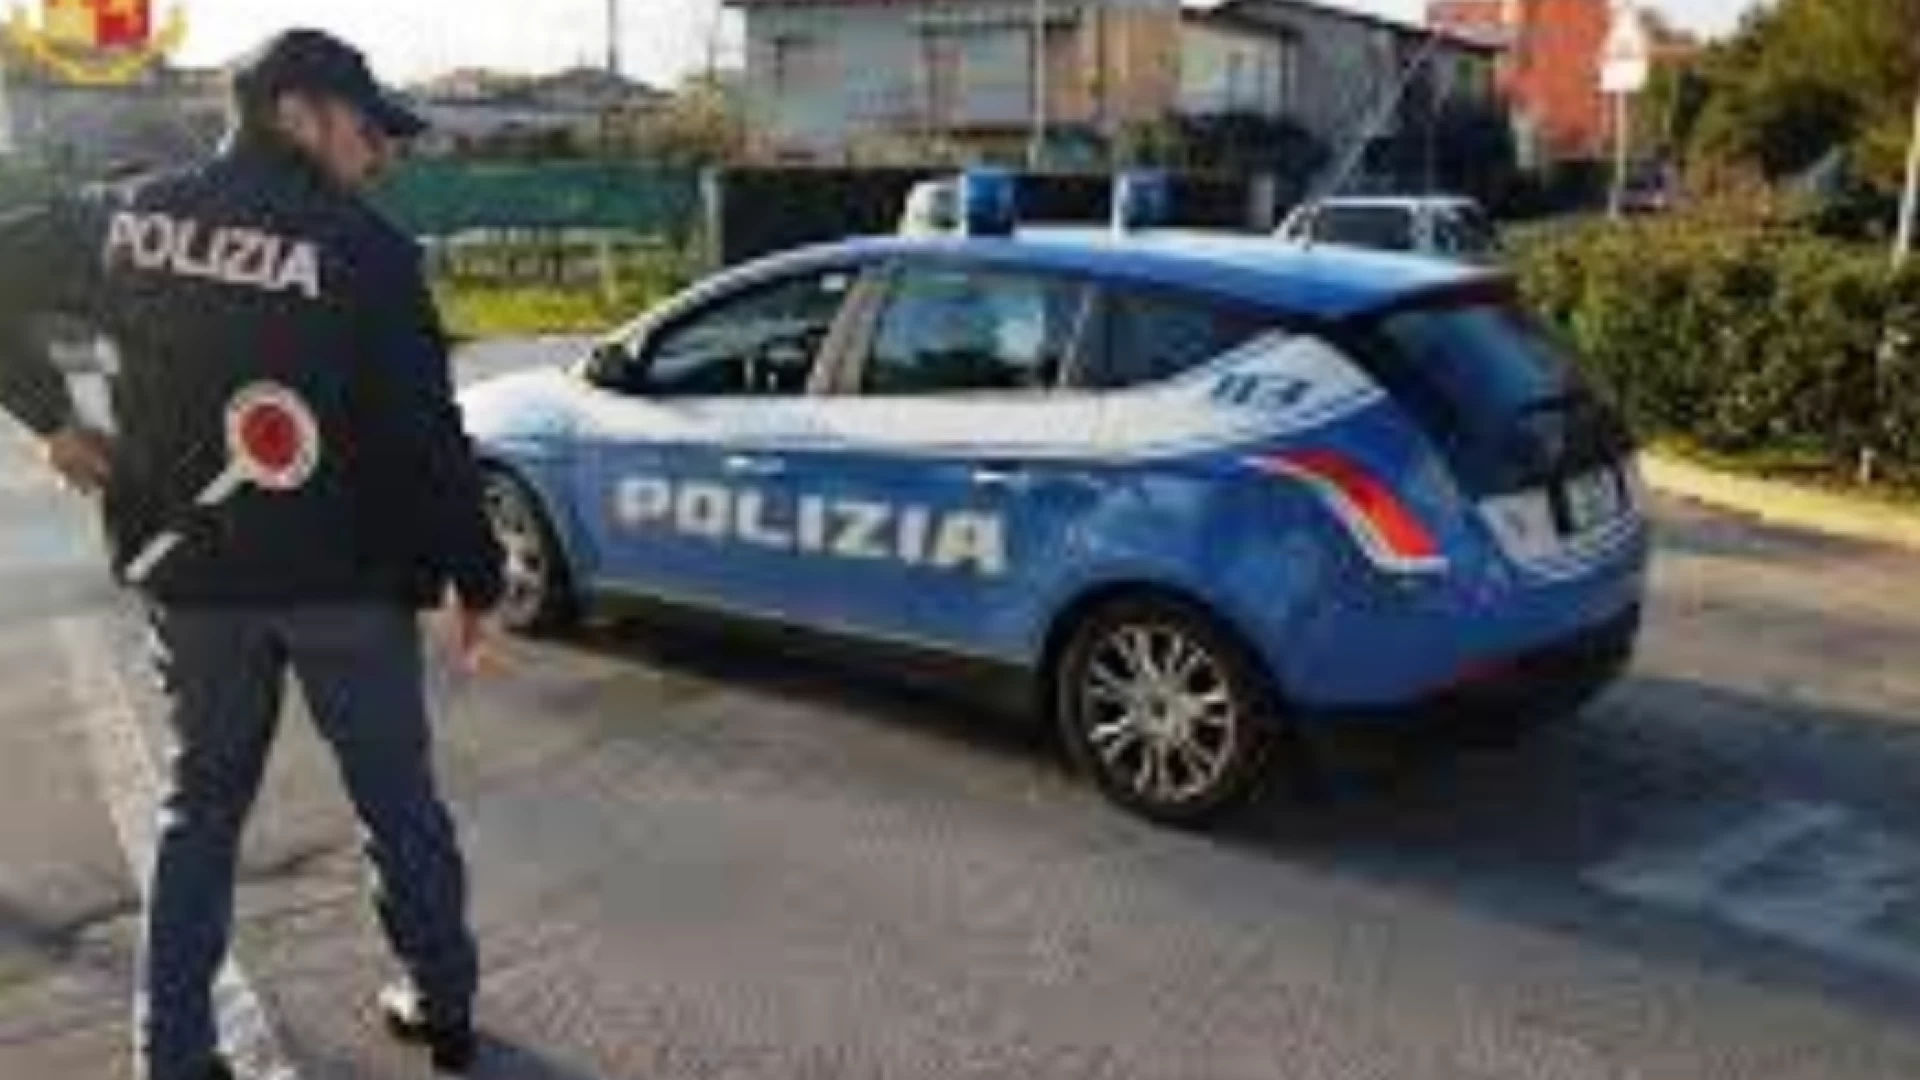 Polizia di Stato - Isernia: provvedimenti di allontanamento per due clandestini.